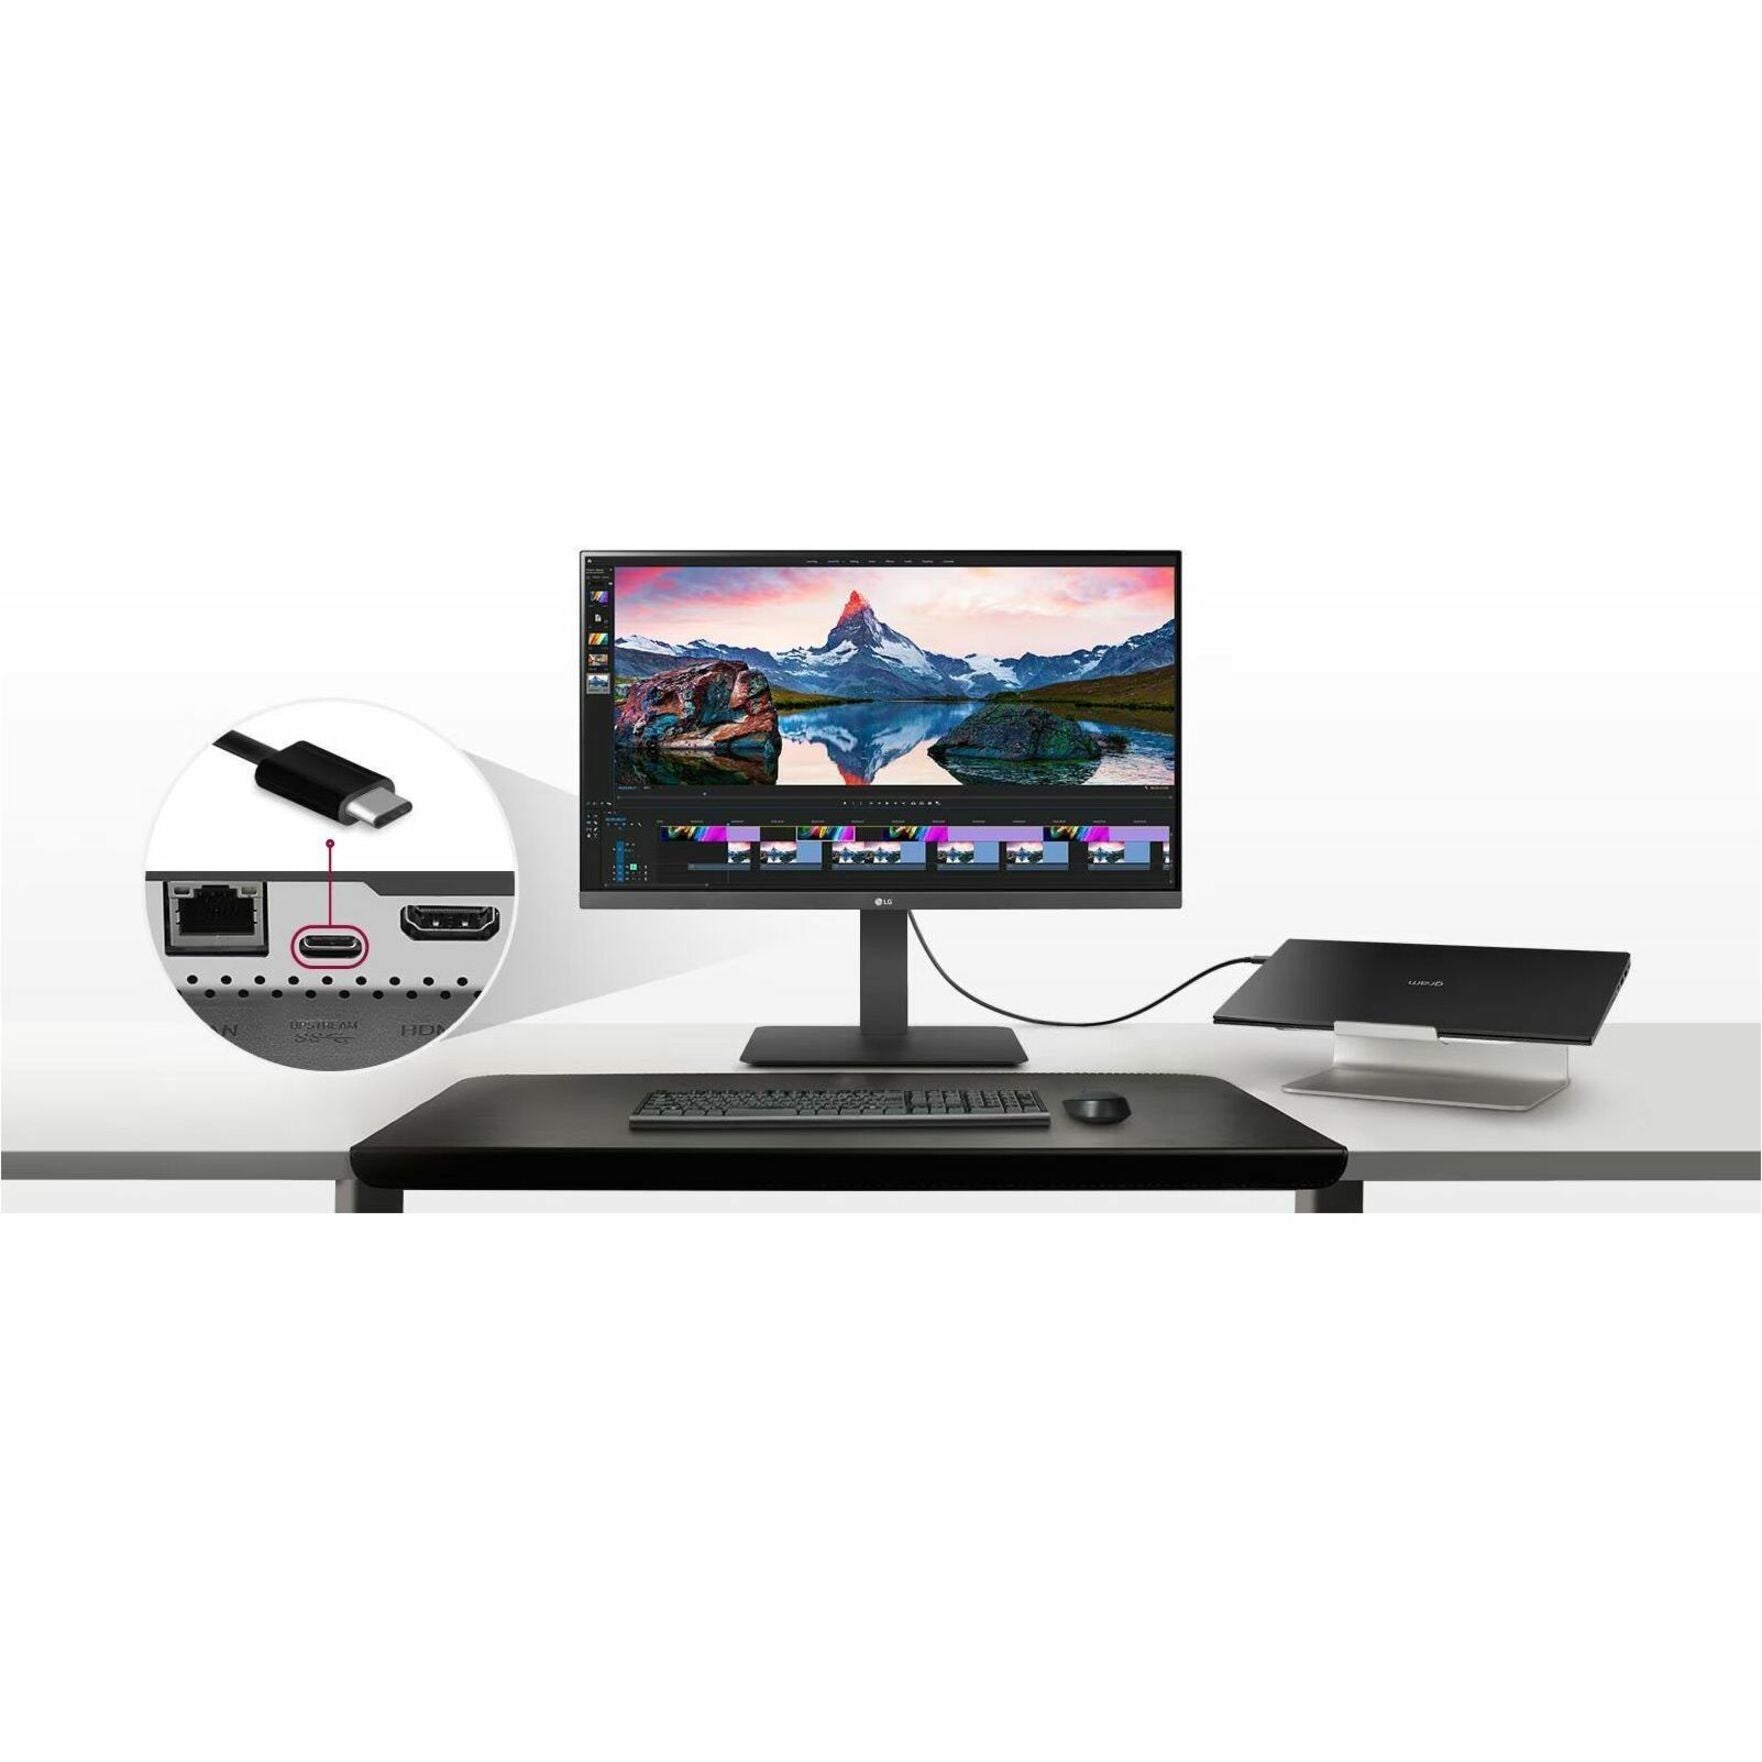 LG 24BR650B-C Widescreen LCD Monitor, Full HD, USB, HDMI, USB Type-C, DisplayPort